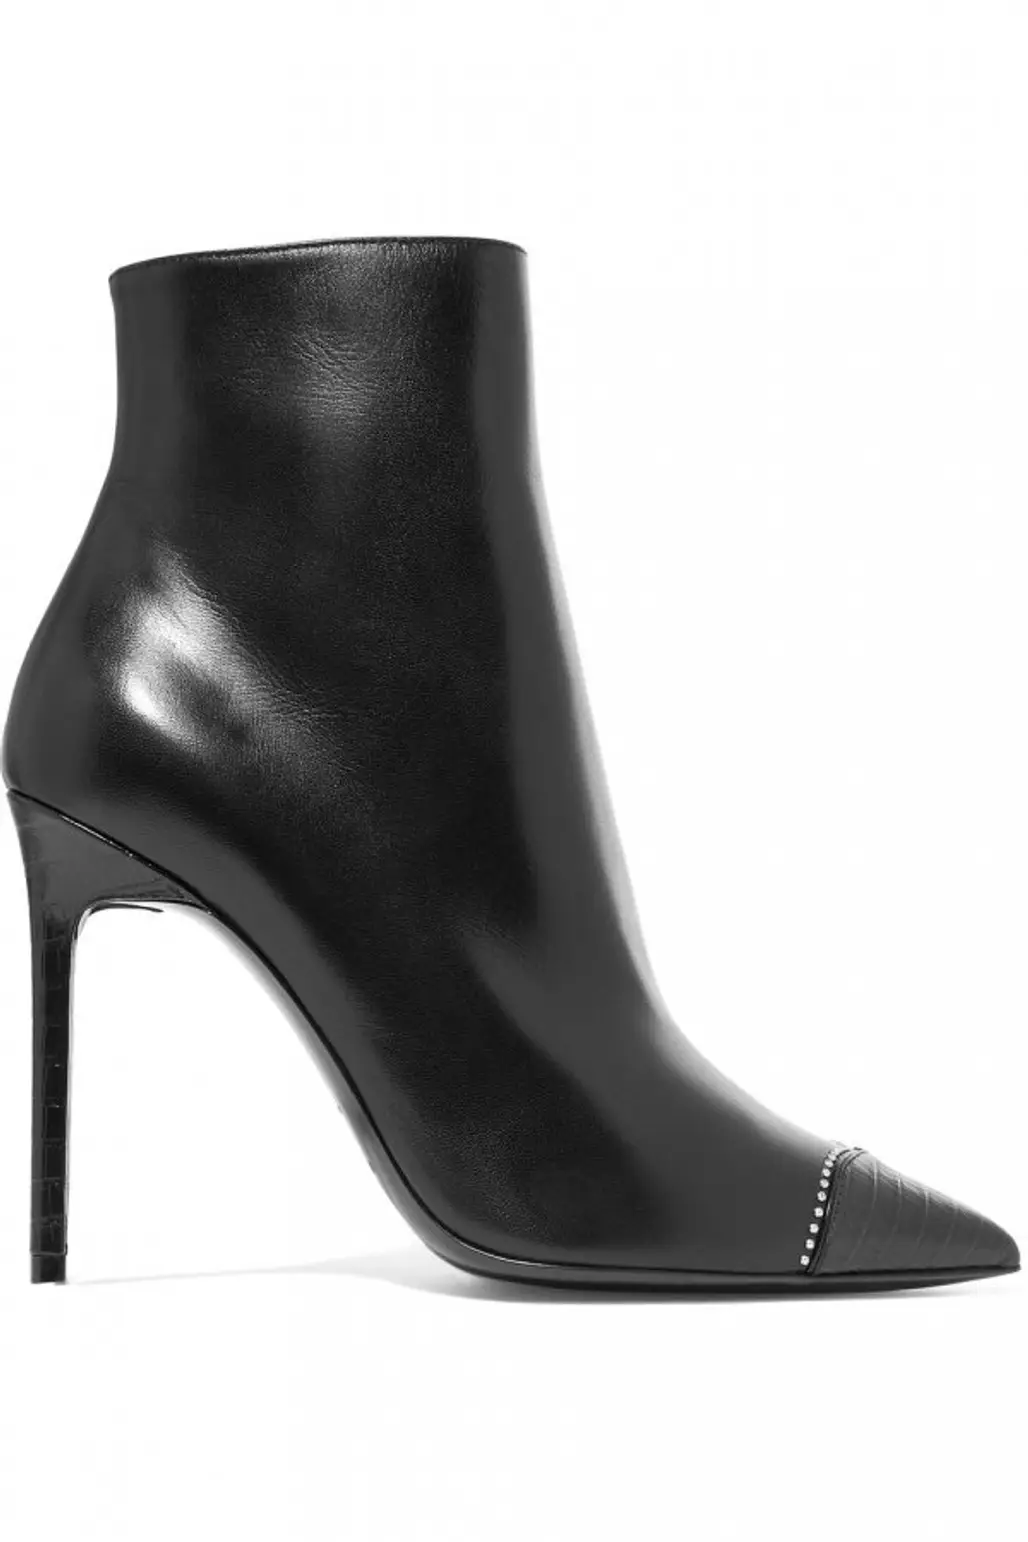 footwear, black, boot, high heeled footwear, shoe,